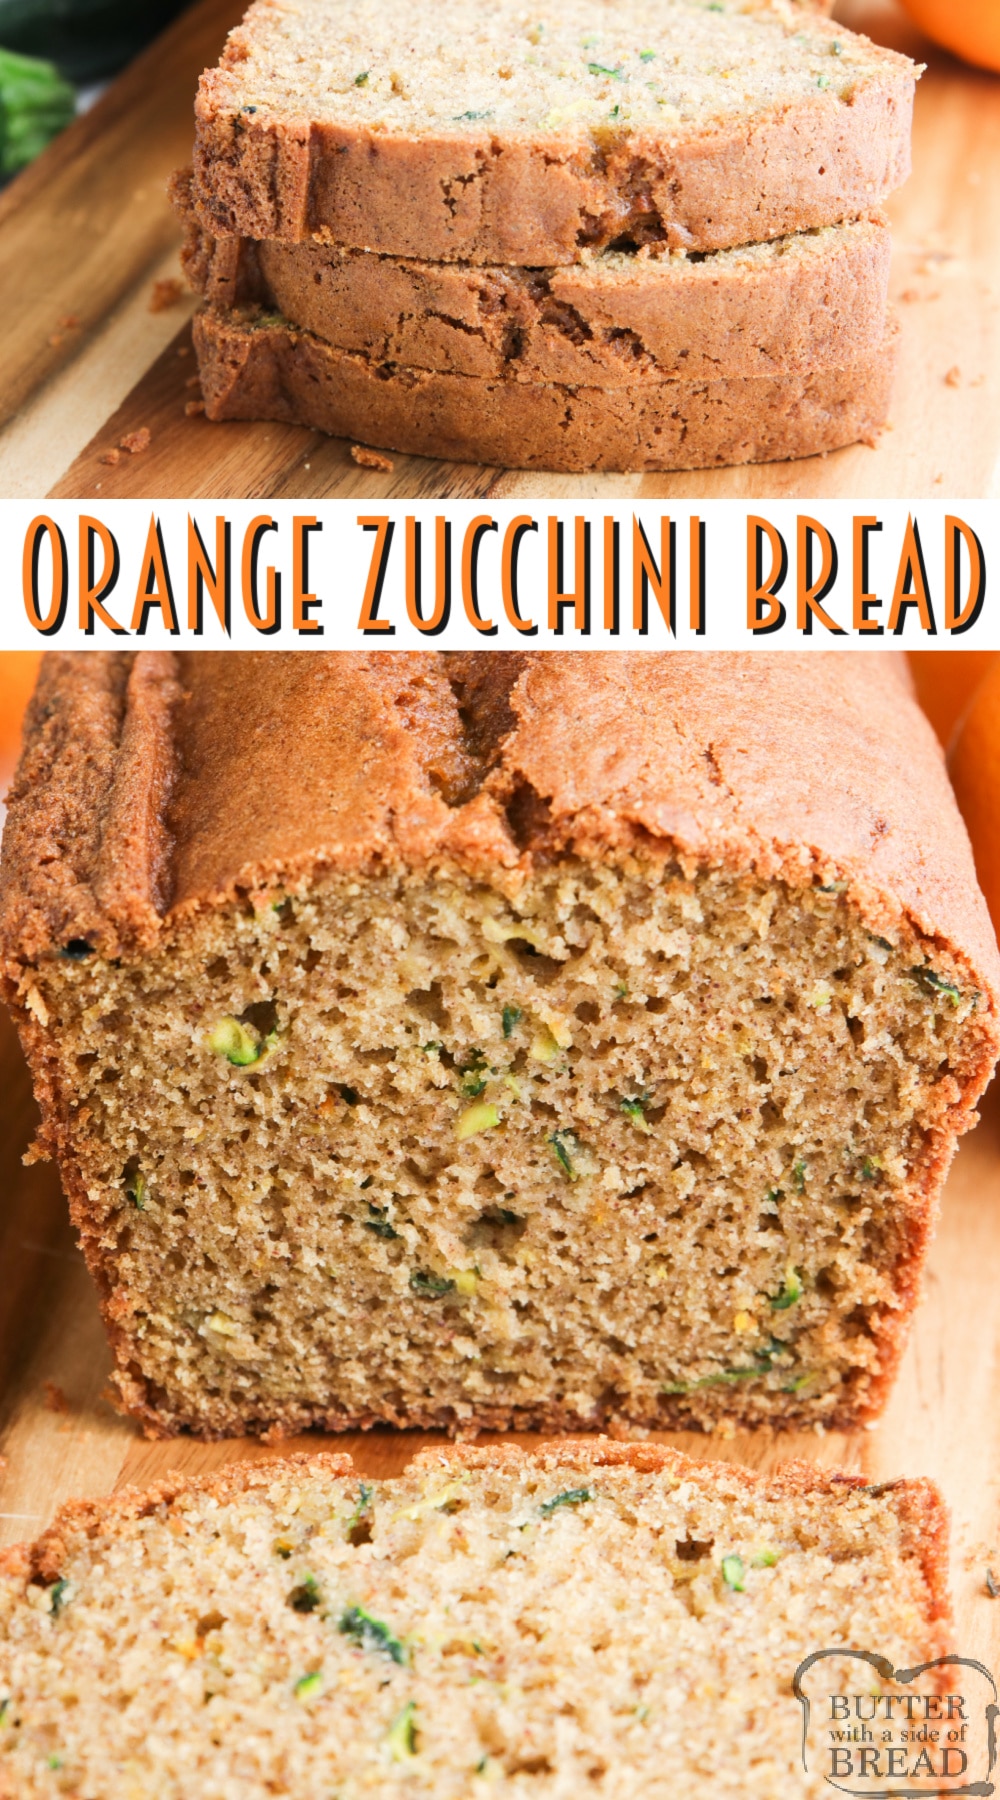 Orange Zucchini Bread combines a classic zucchini bread recipe with a ton of orange flavor, all in one delicious quick bread recipe!